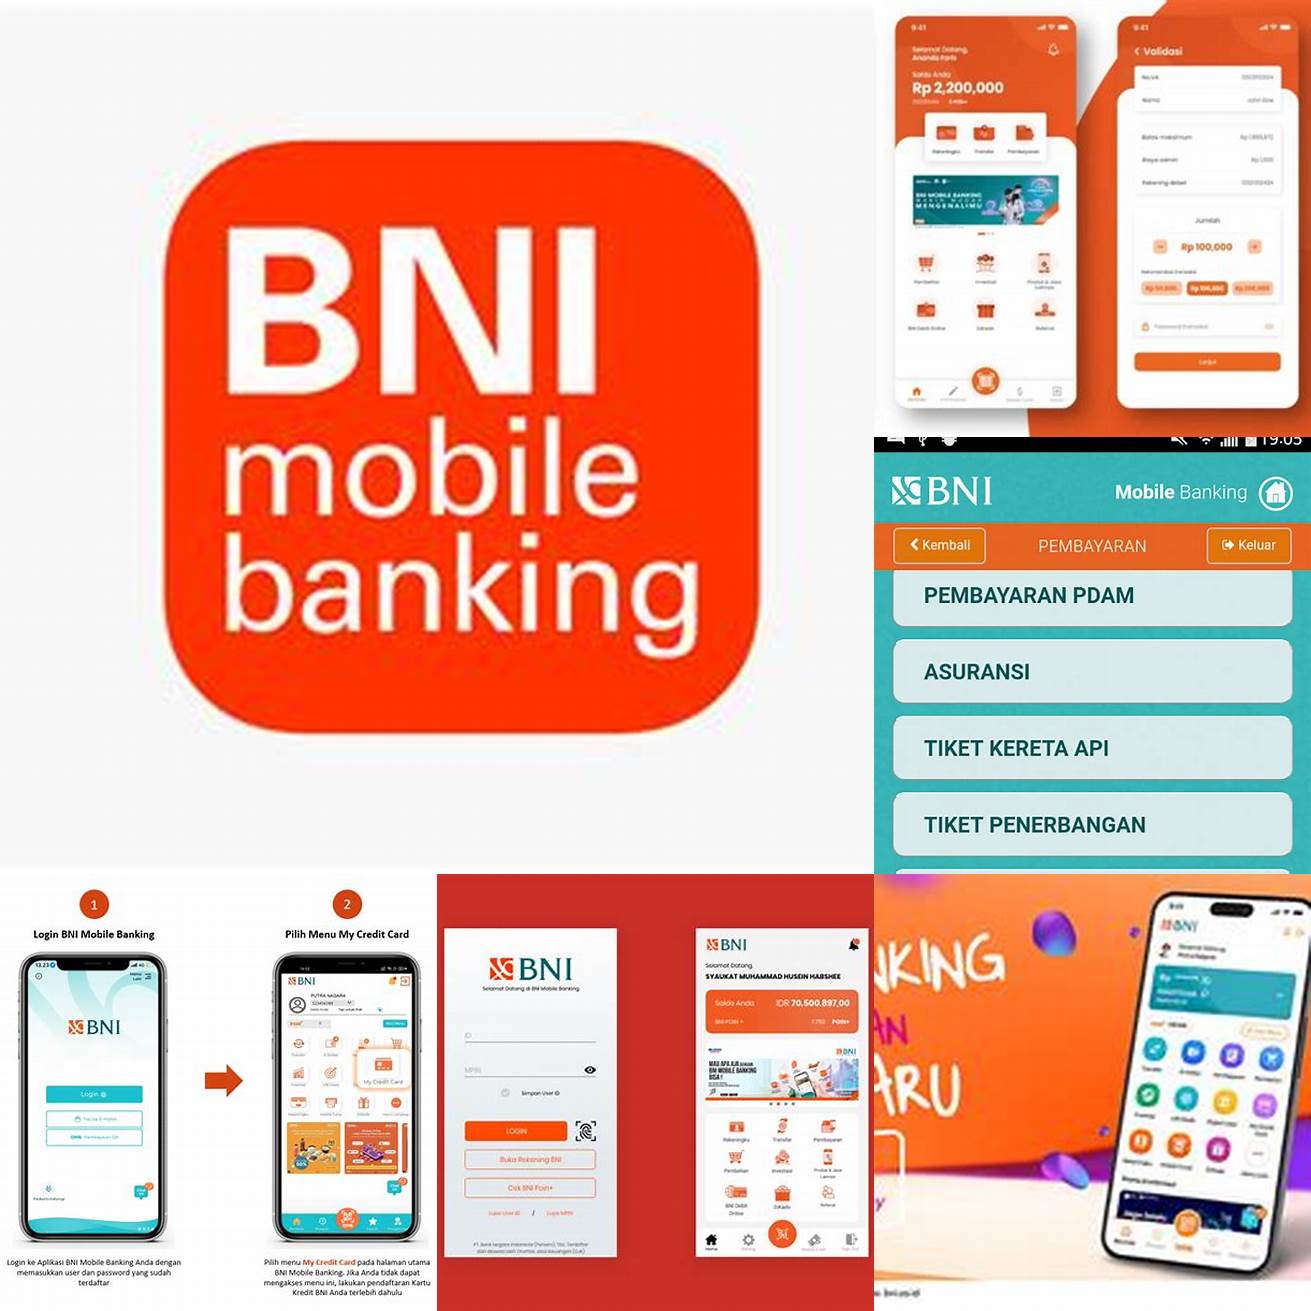 Unduh aplikasi Mobile Banking BNI di Google Play Store atau App Store